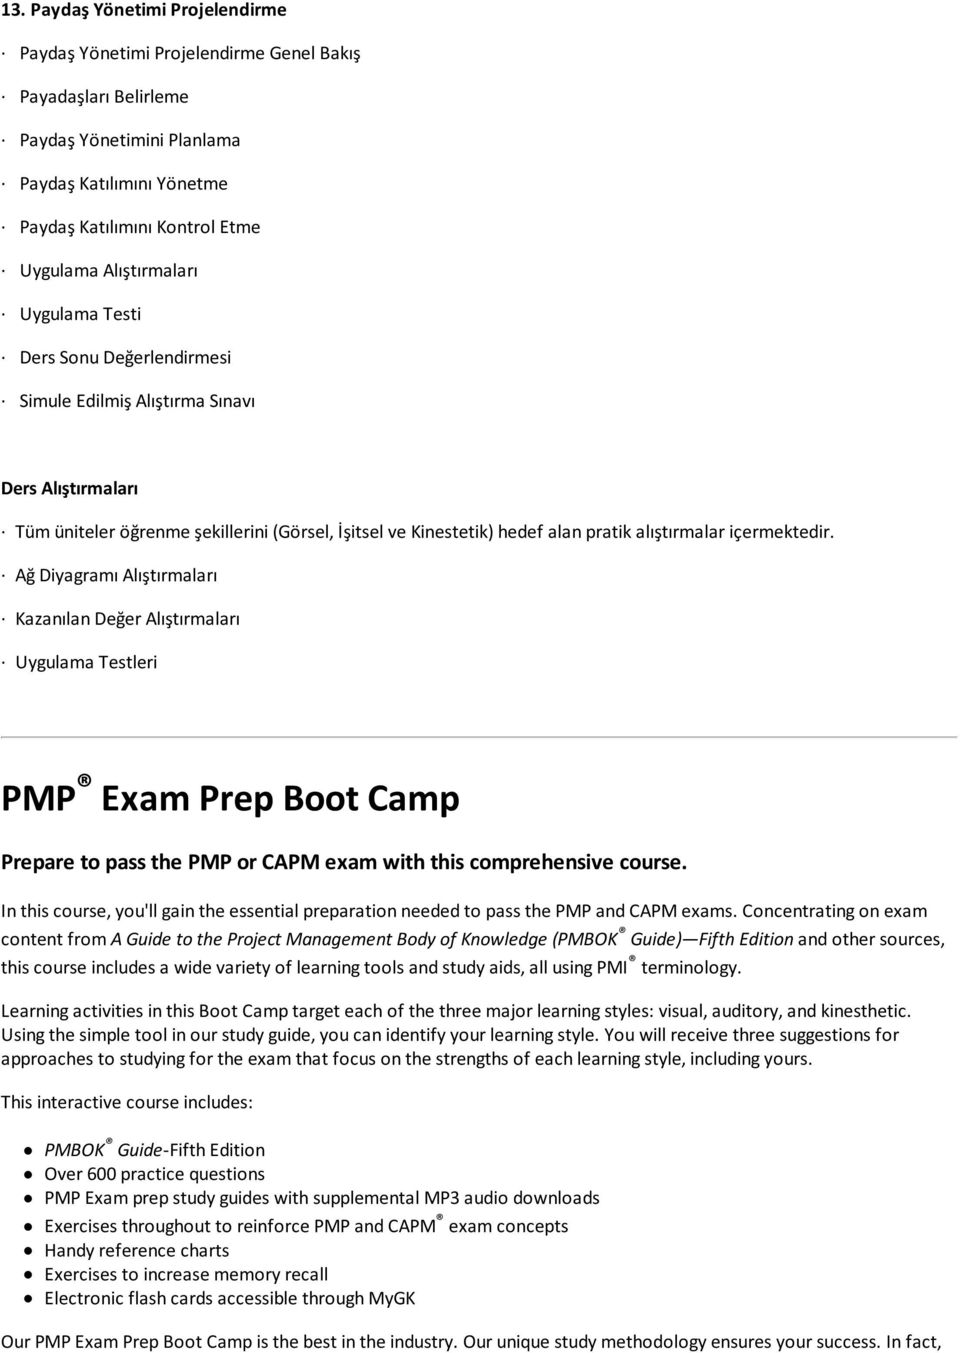 Ağ Diyagramı Alıştırmaları Kazanılan Değer Alıştırmaları Uygulama Testleri PMP Exam Prep Boot Camp Prepare to pass the PMP or CAPM exam with this comprehensive course.